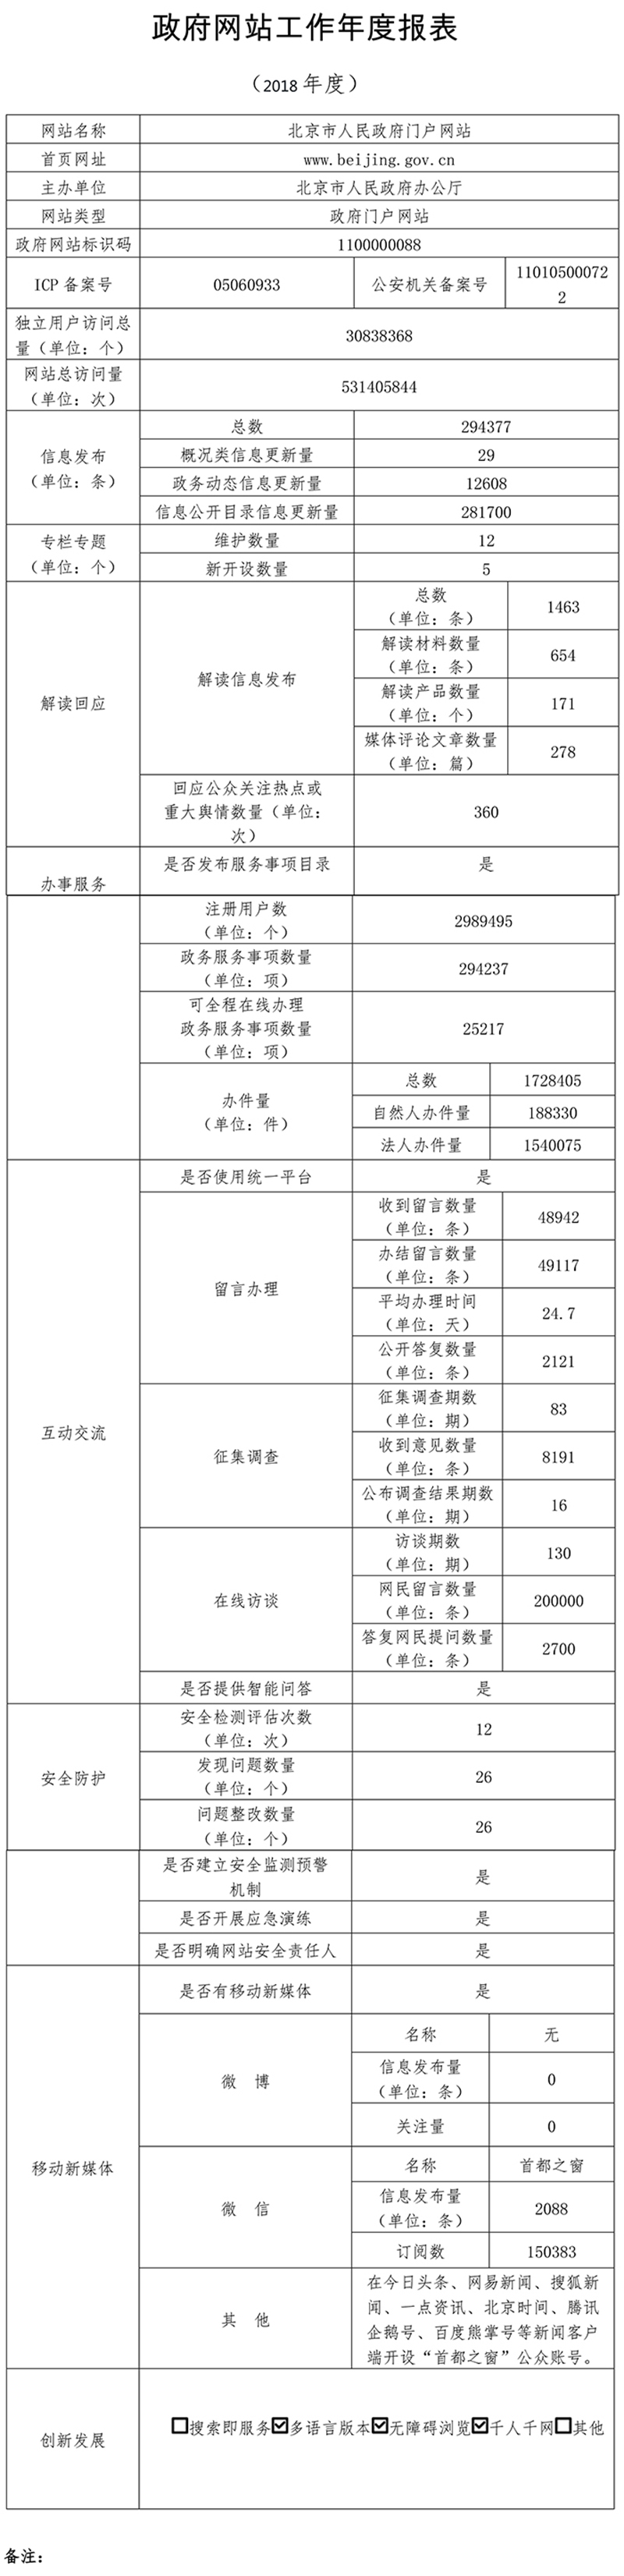 北京市人民政府门户网站2018年度工作报表